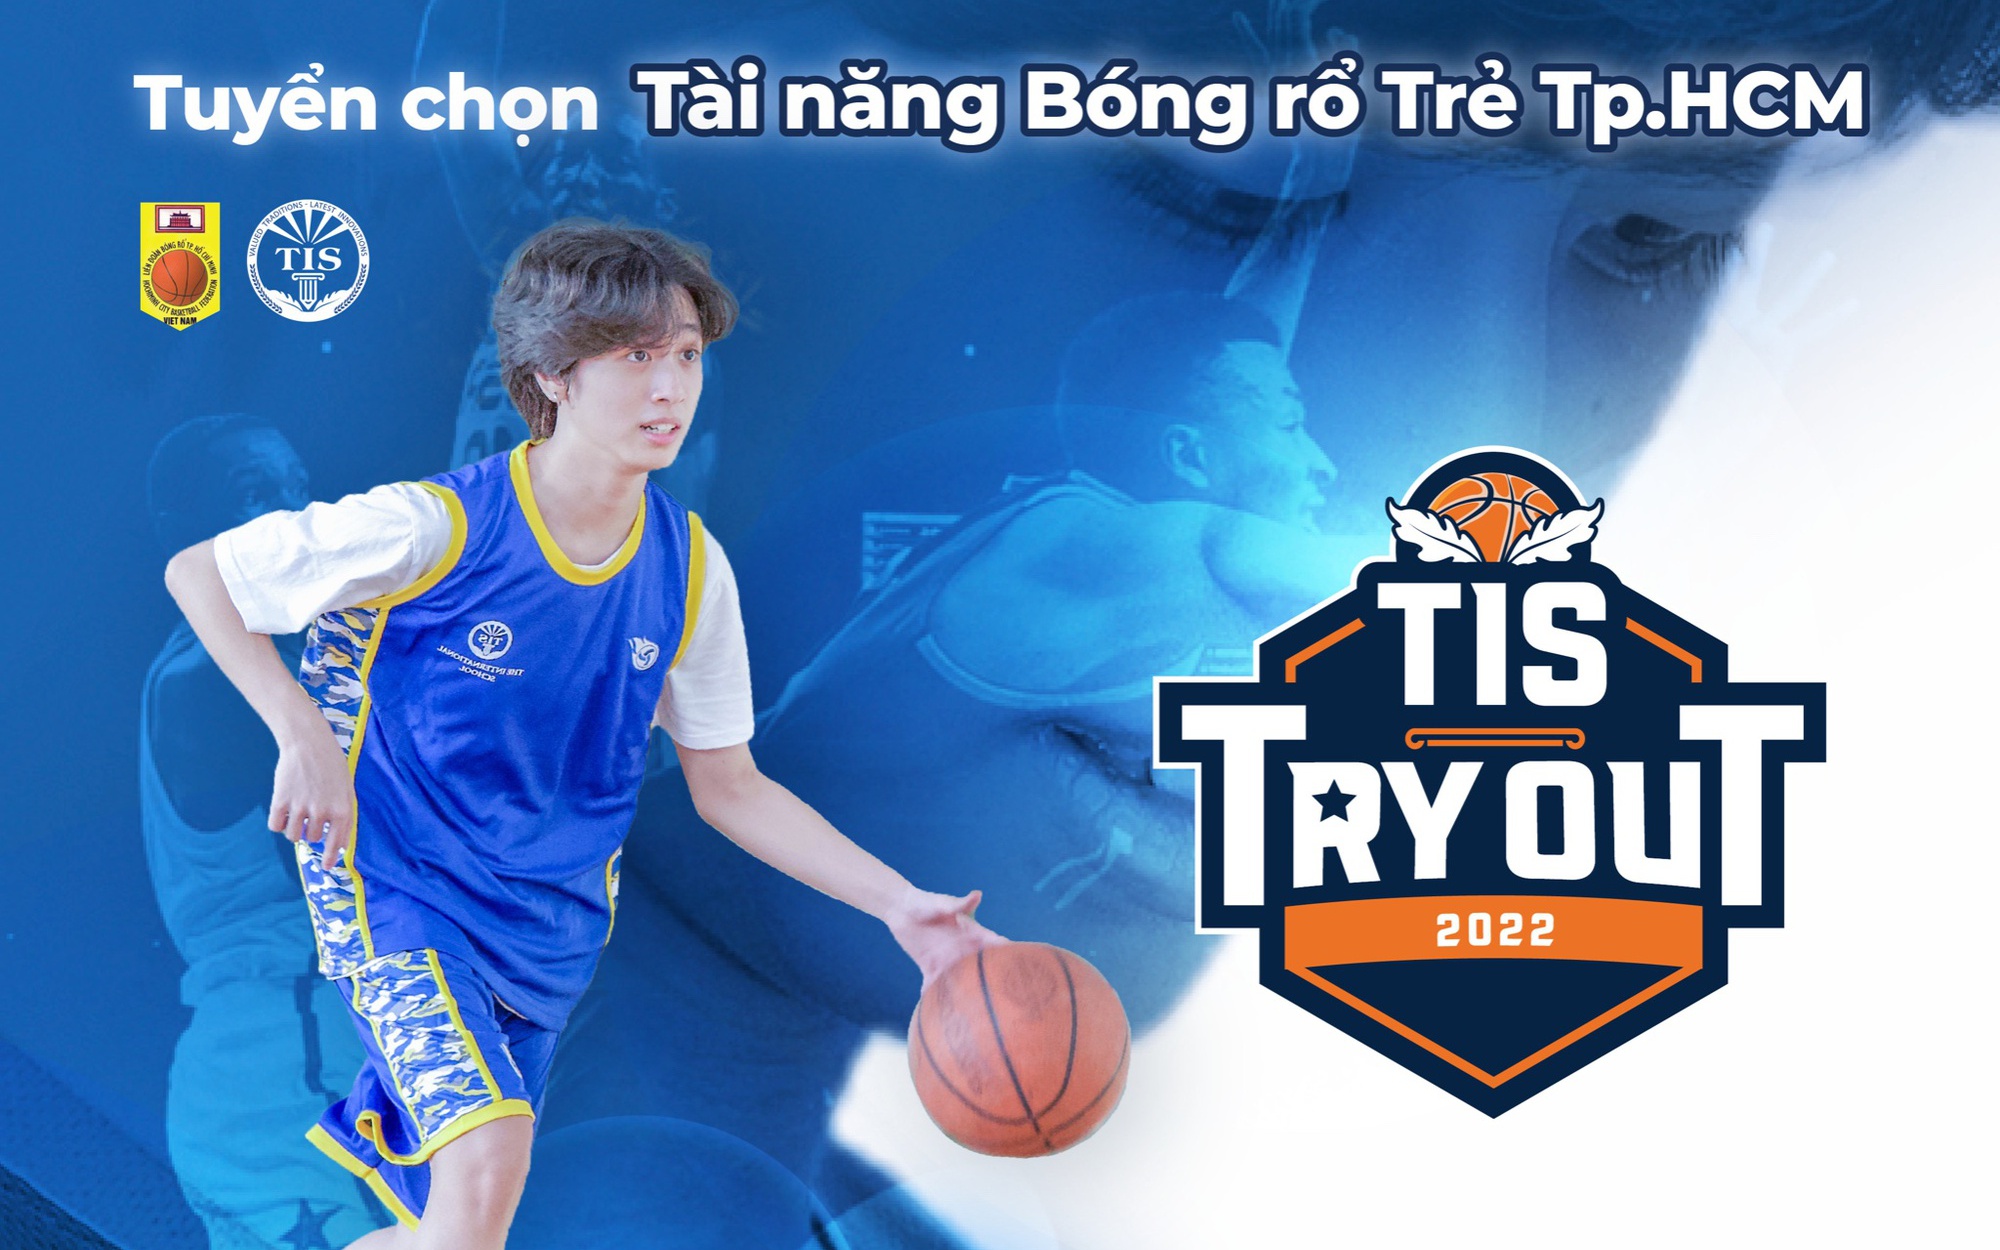 TIS TRY OUT 2022: Sự kiện tuyển chọn tài năng bóng rổ trẻ TP. Hồ Chí Minh và sức bật sau kỳ SEA Games 31